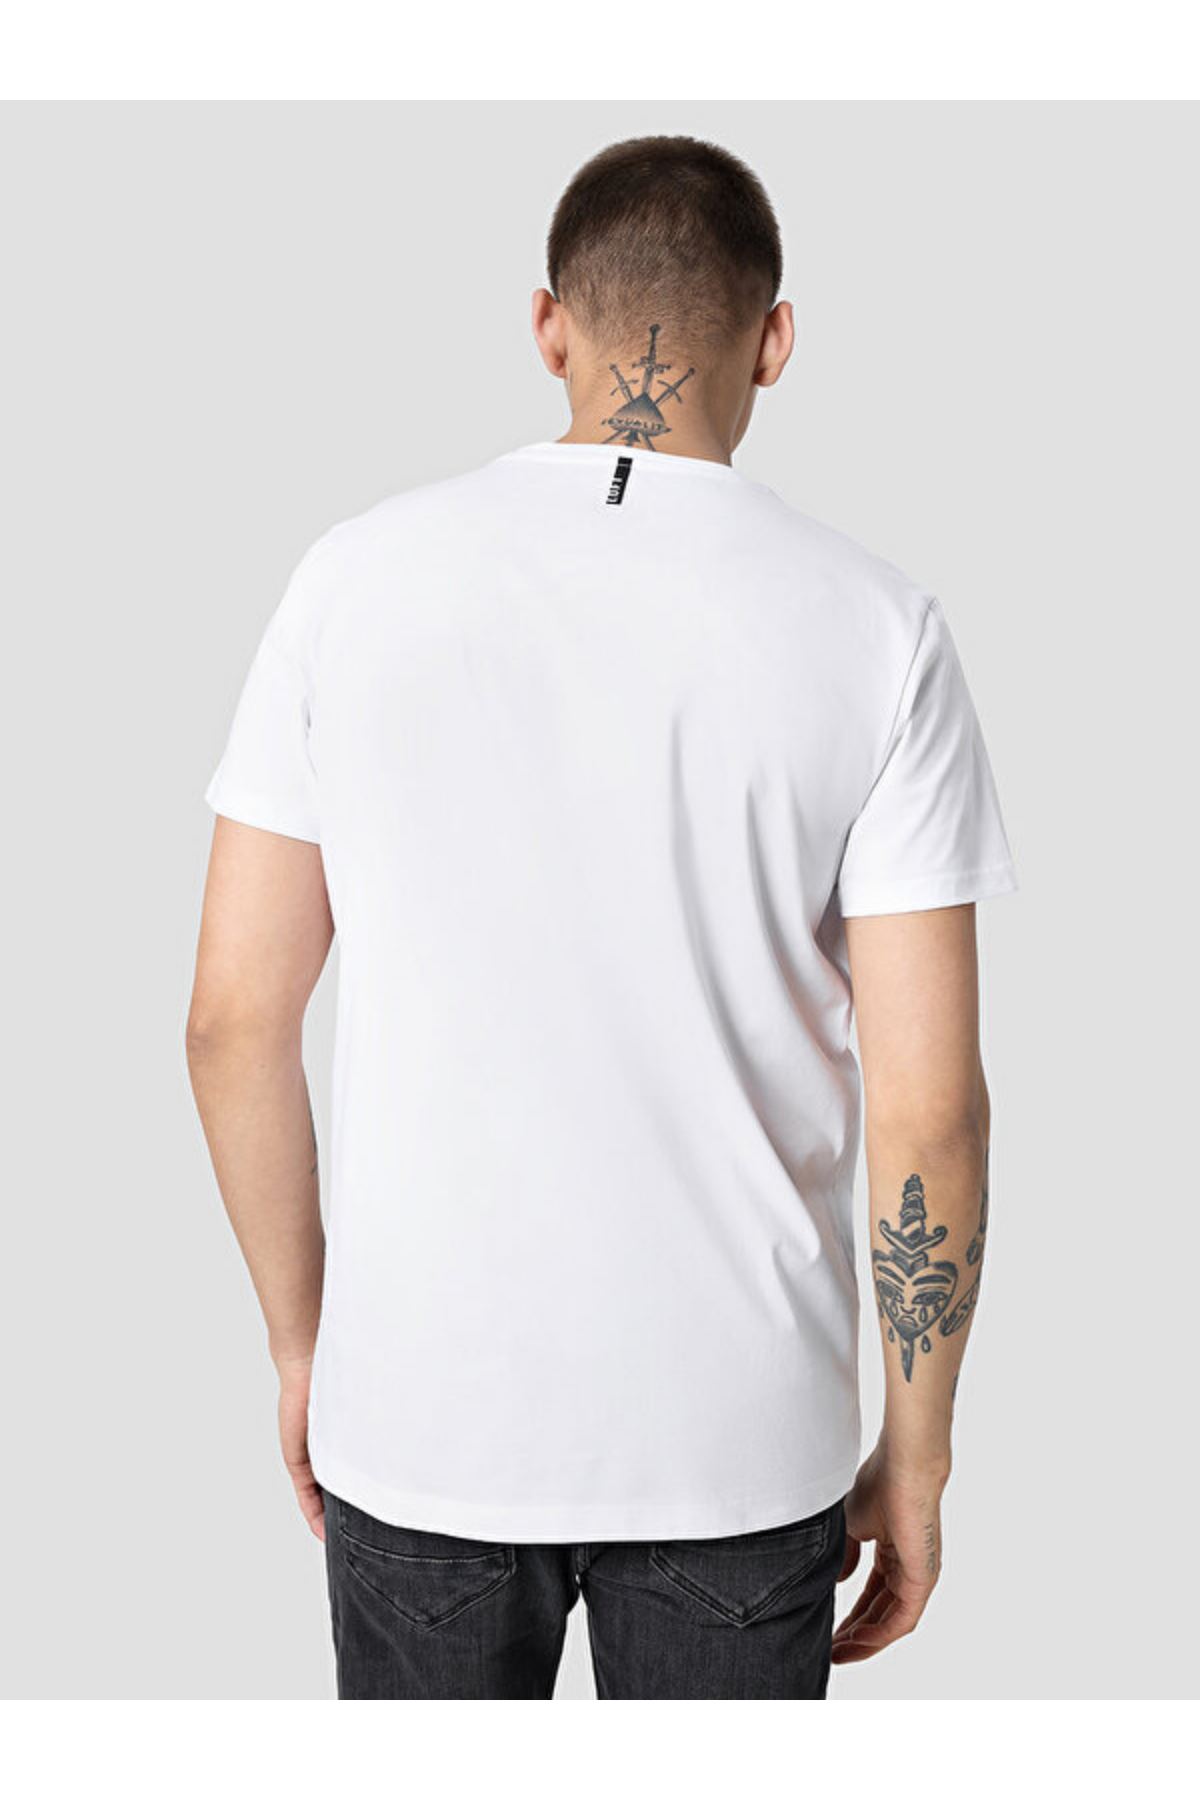 Loft Erkek Beyaz Tişört - LF2032118